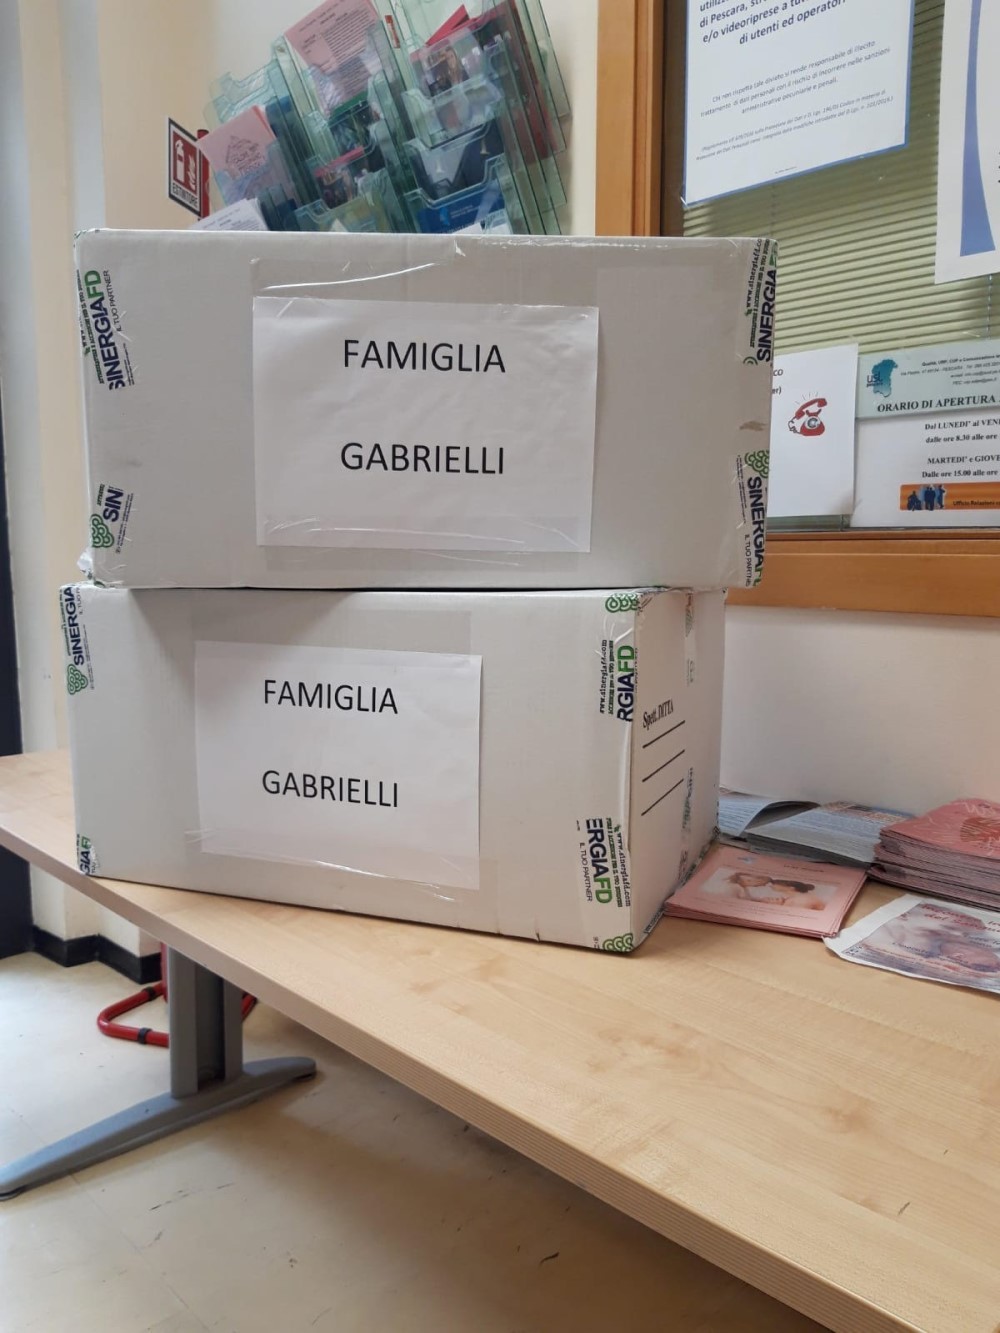 Gabrielli dona 5000 mascherine all'Ospedale di Pescara 